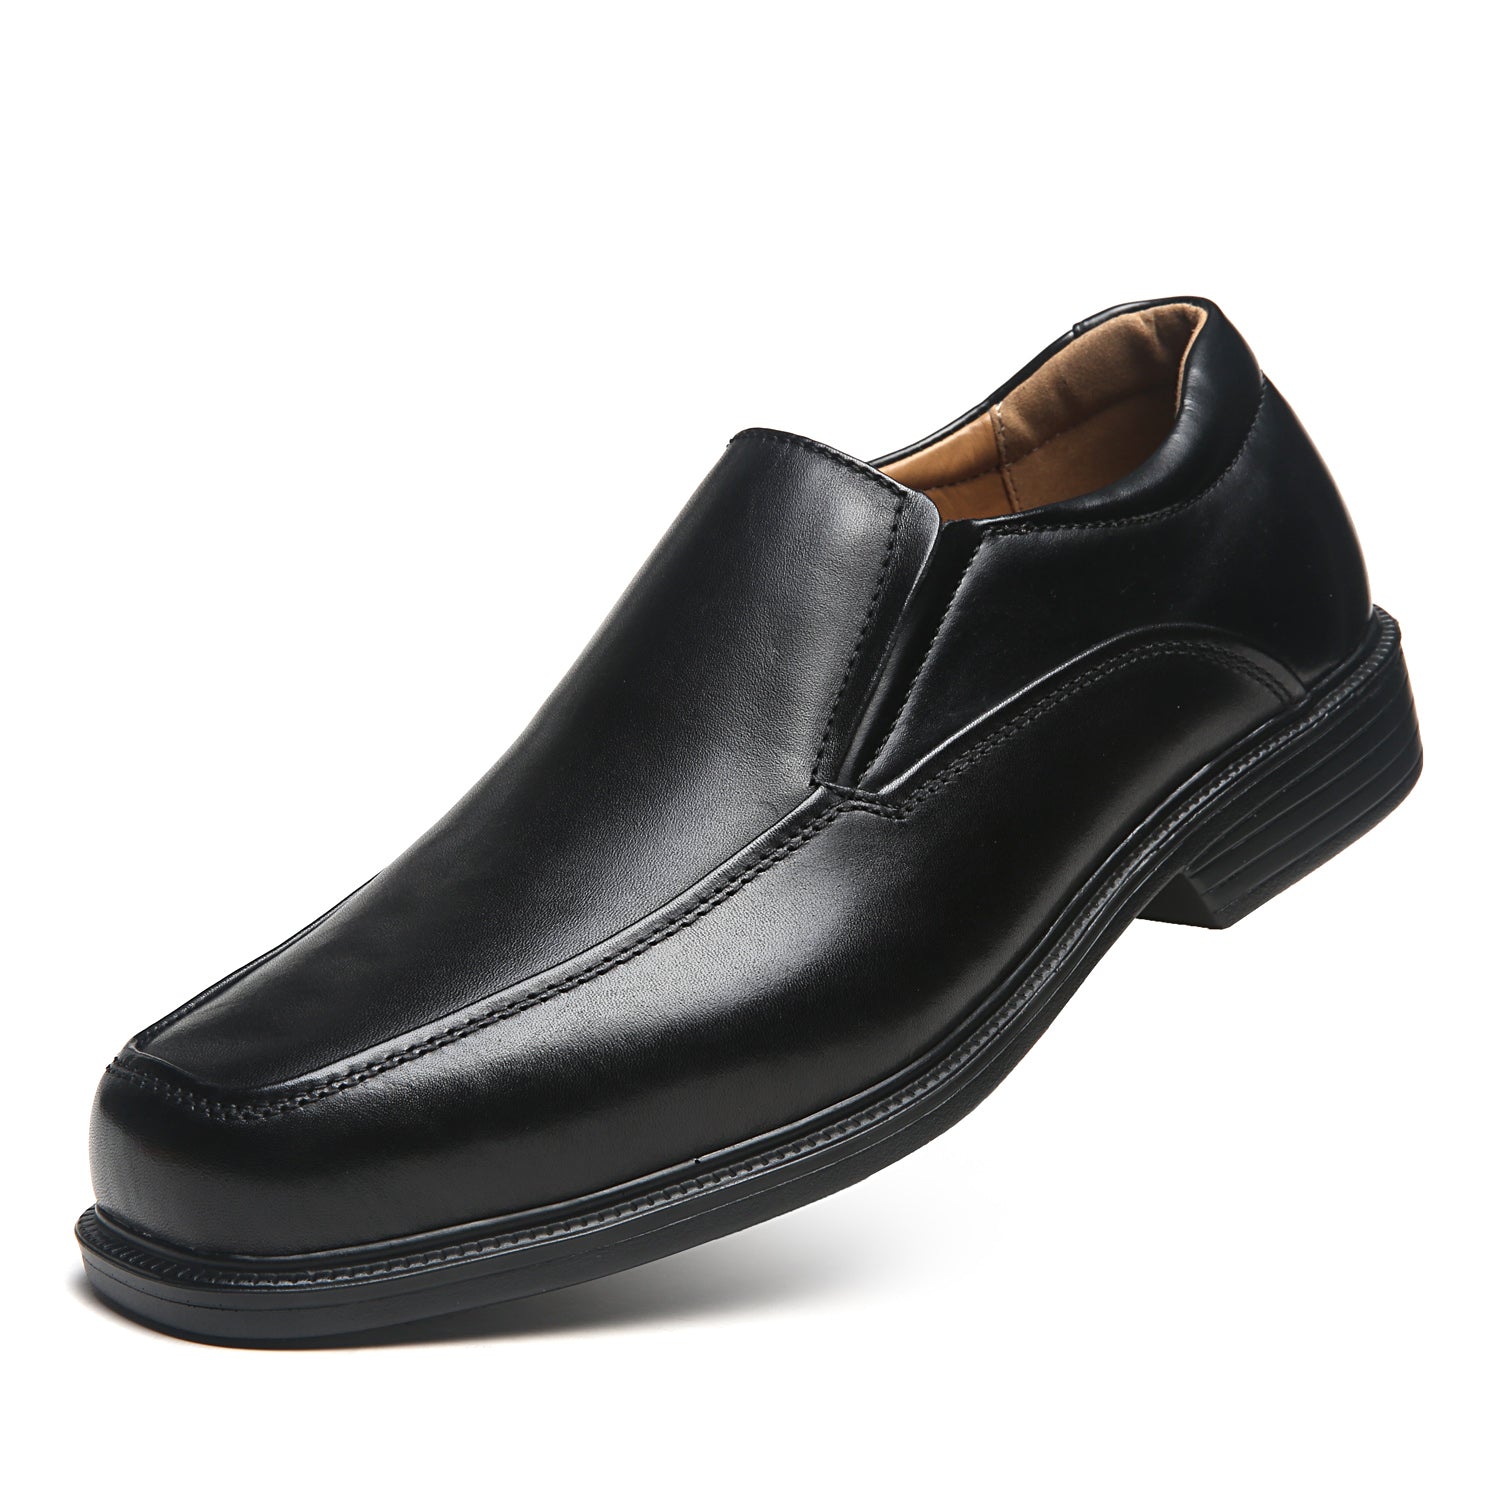 Men's Wide Width Oxford Shoes Wide-3-Black | La Milano Mens Shoes